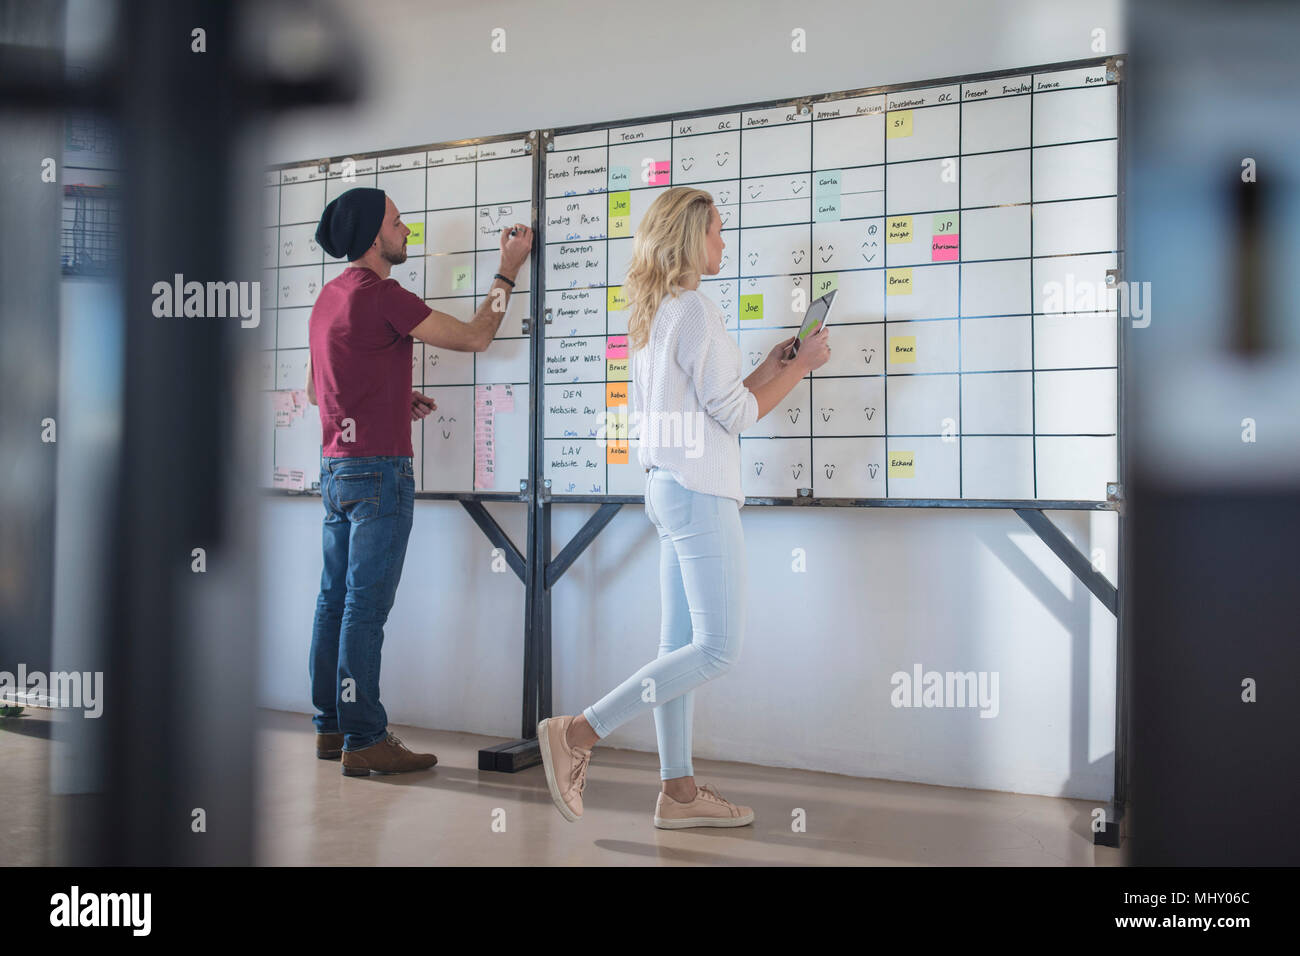 Männlichen und weiblichen Kollegen planung ideen auf Office Whiteboard  Stockfotografie - Alamy